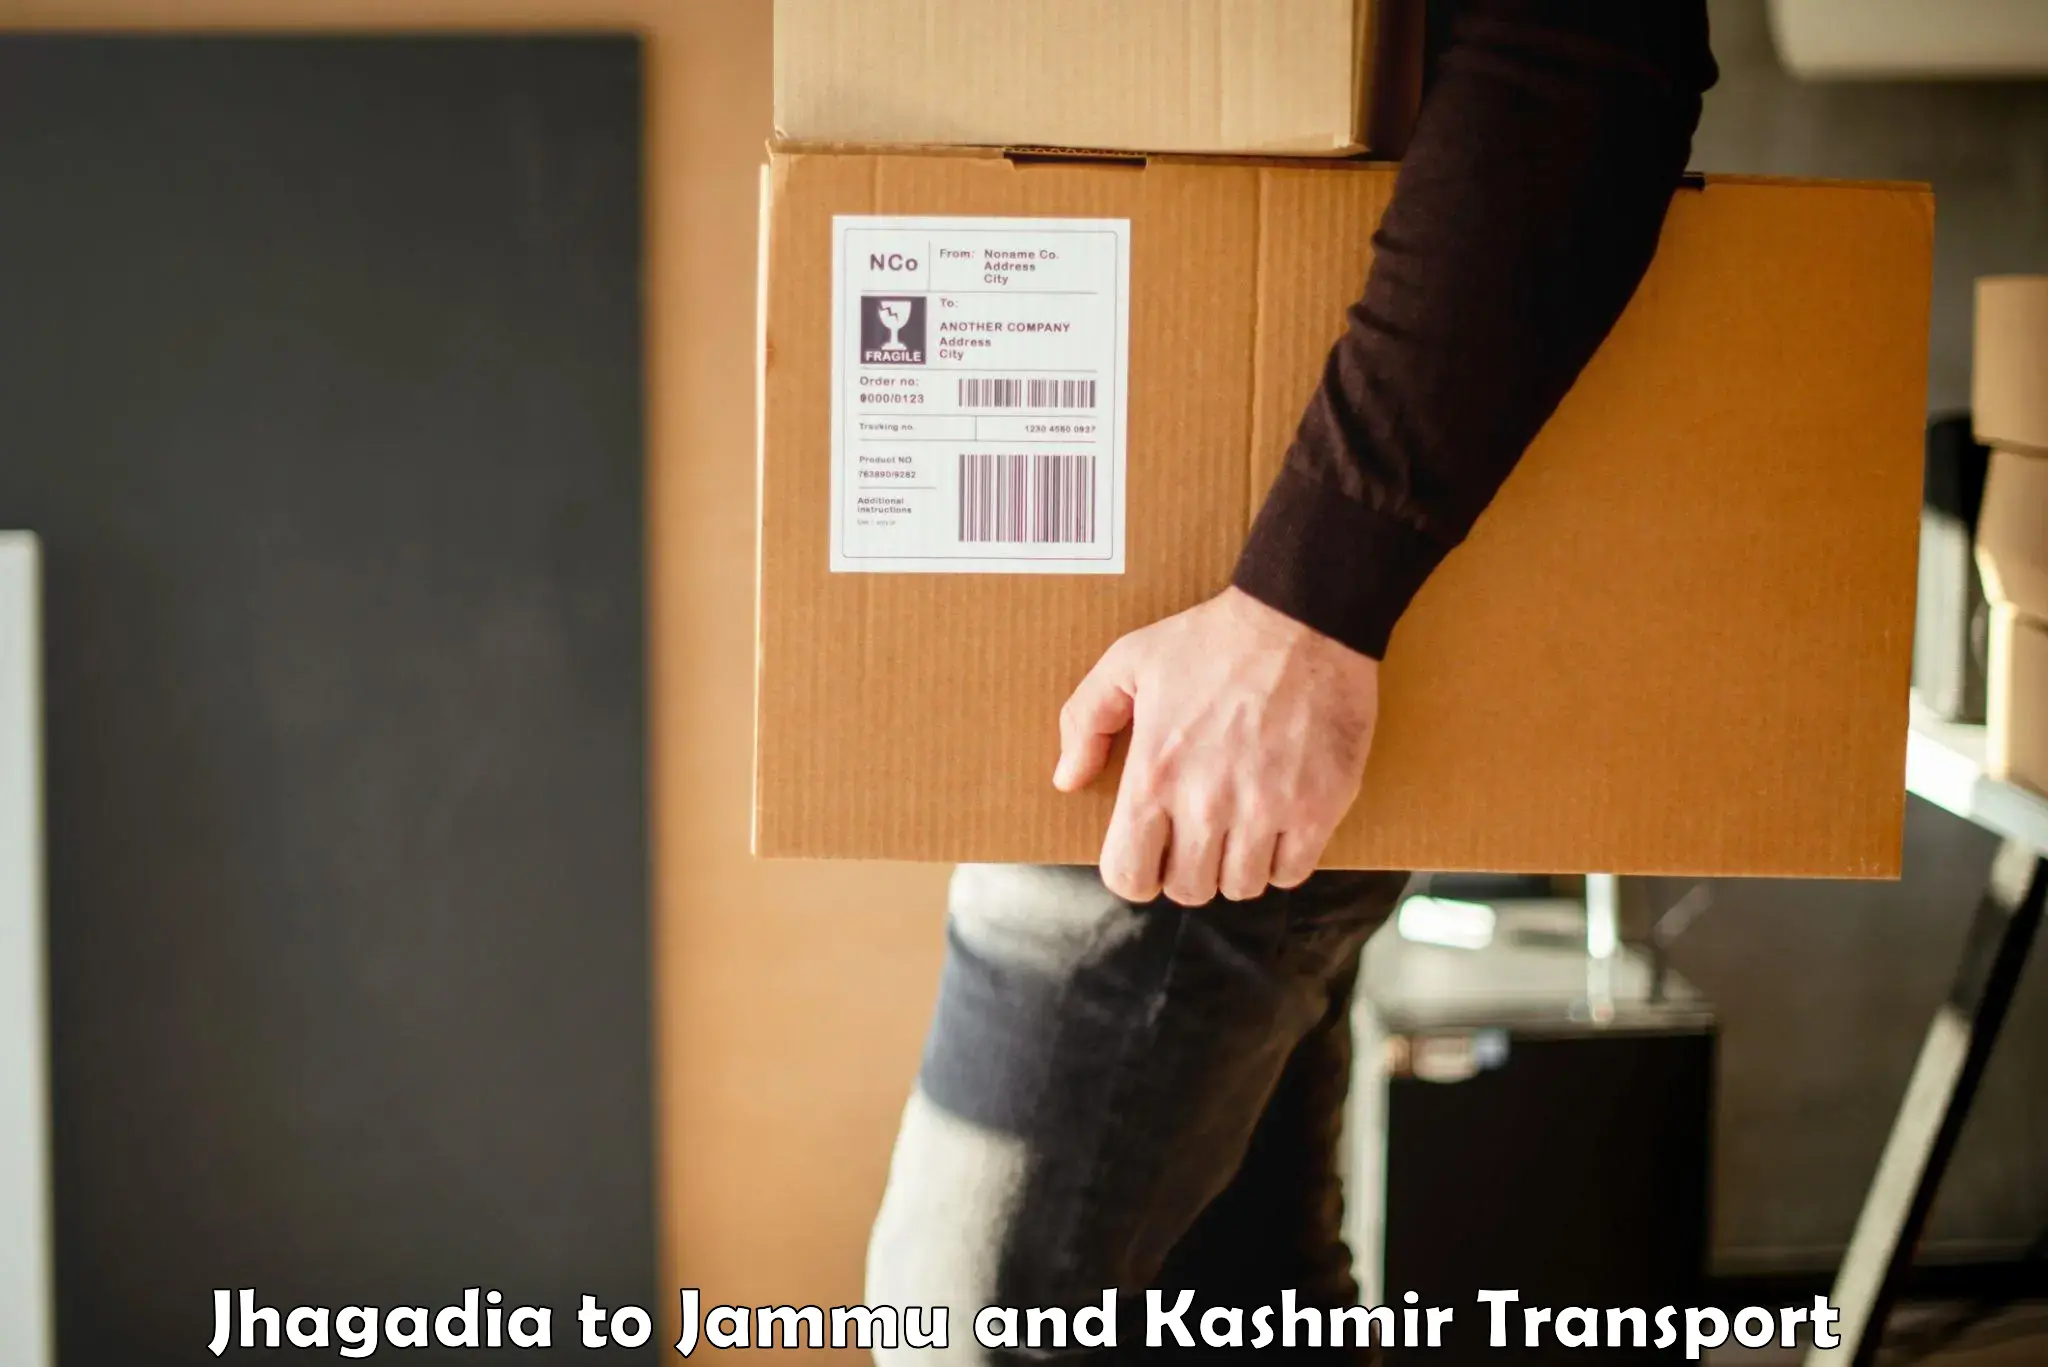 Express transport services Jhagadia to Jammu and Kashmir